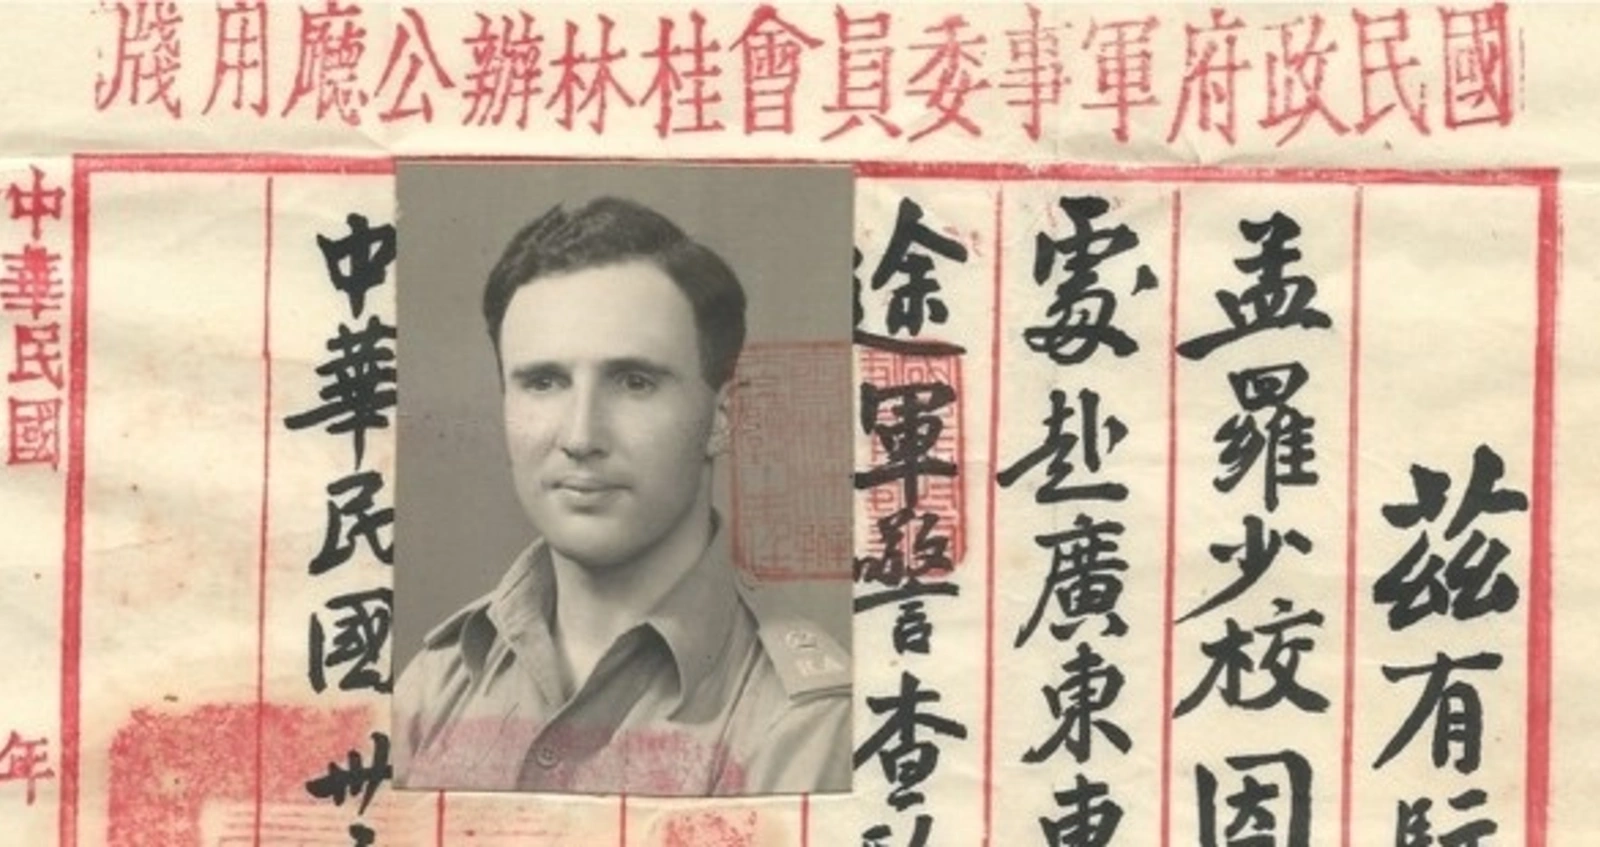 John Monro's Chinese travel pass